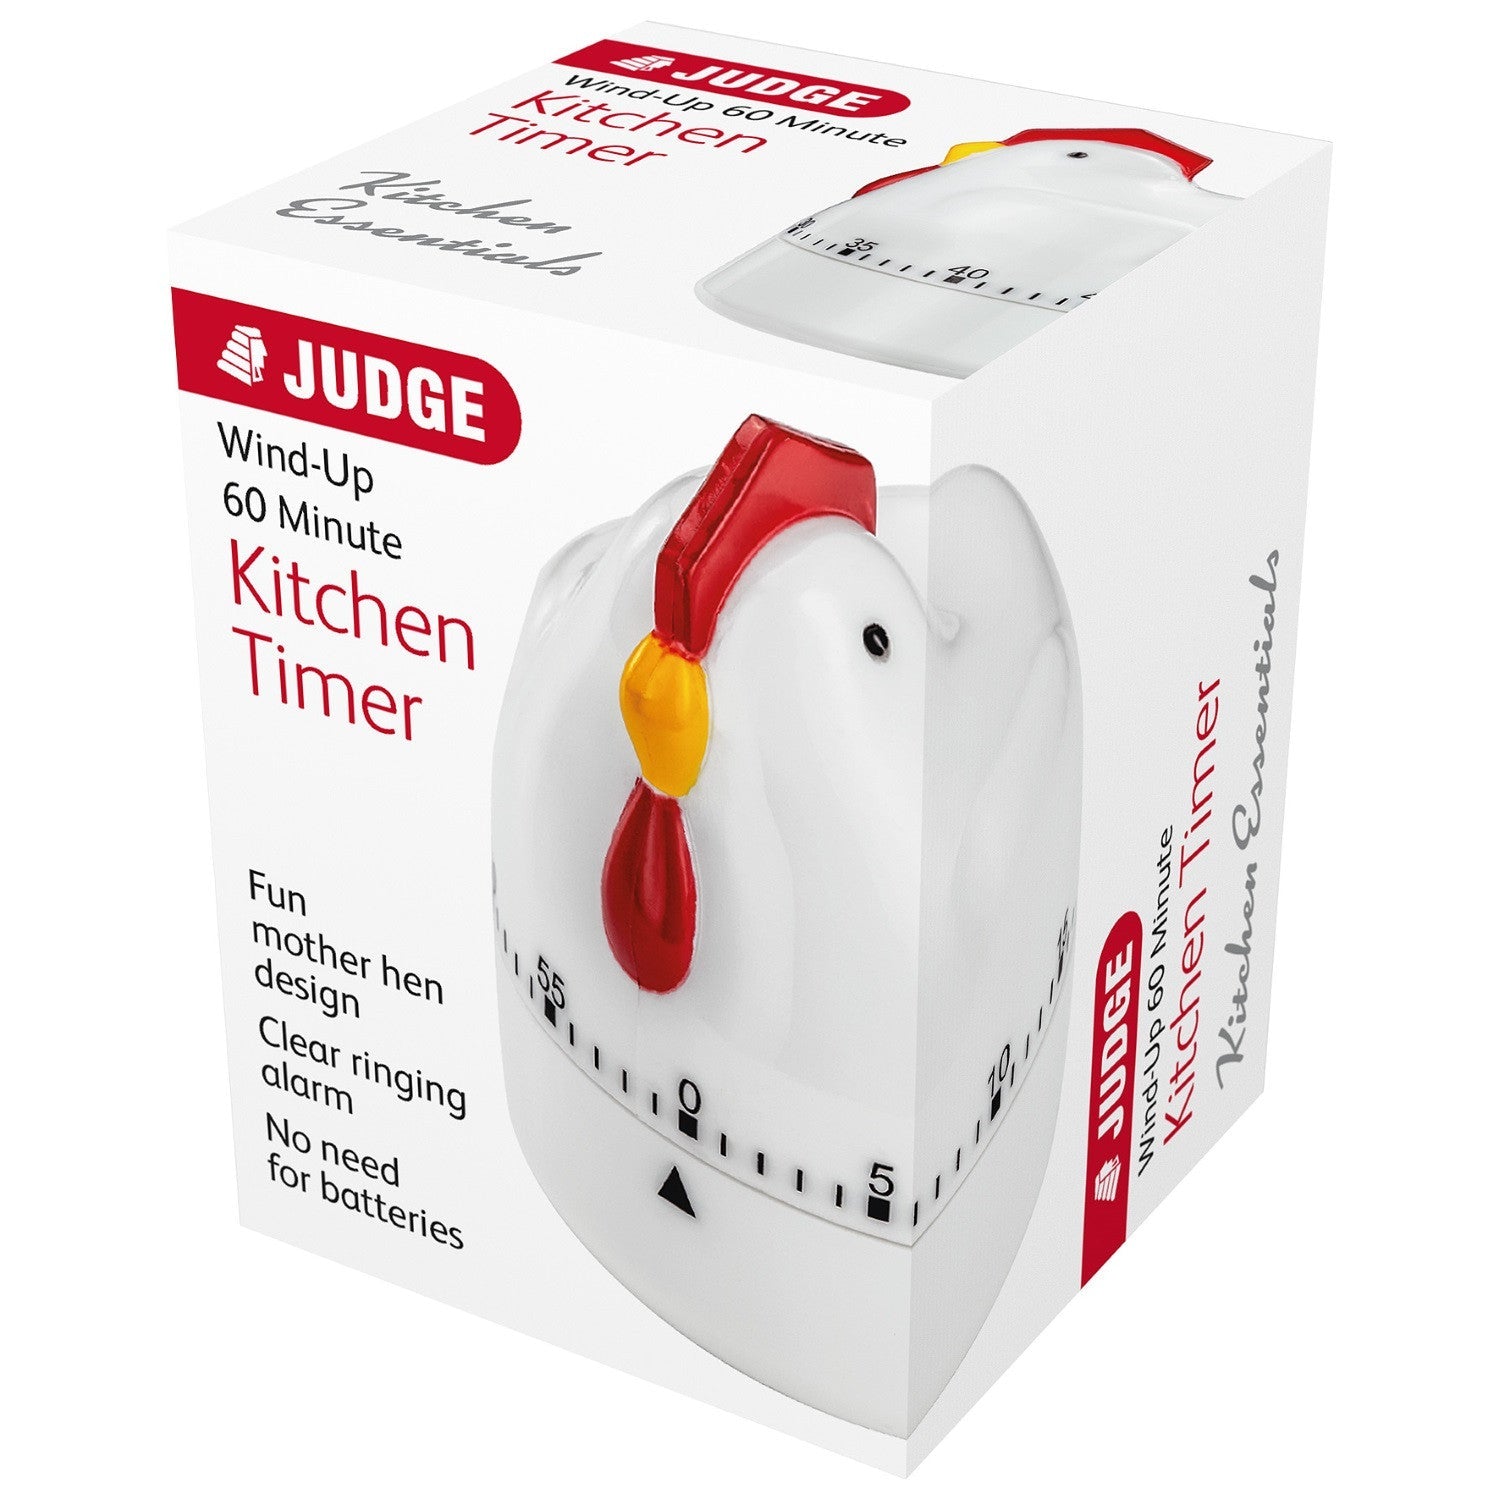 Judge TC338 Kitchen Essentials Kitchen Timer - Chicken - Premium Timers from Horwood - Just $4.7! Shop now at W Hurst & Son (IW) Ltd